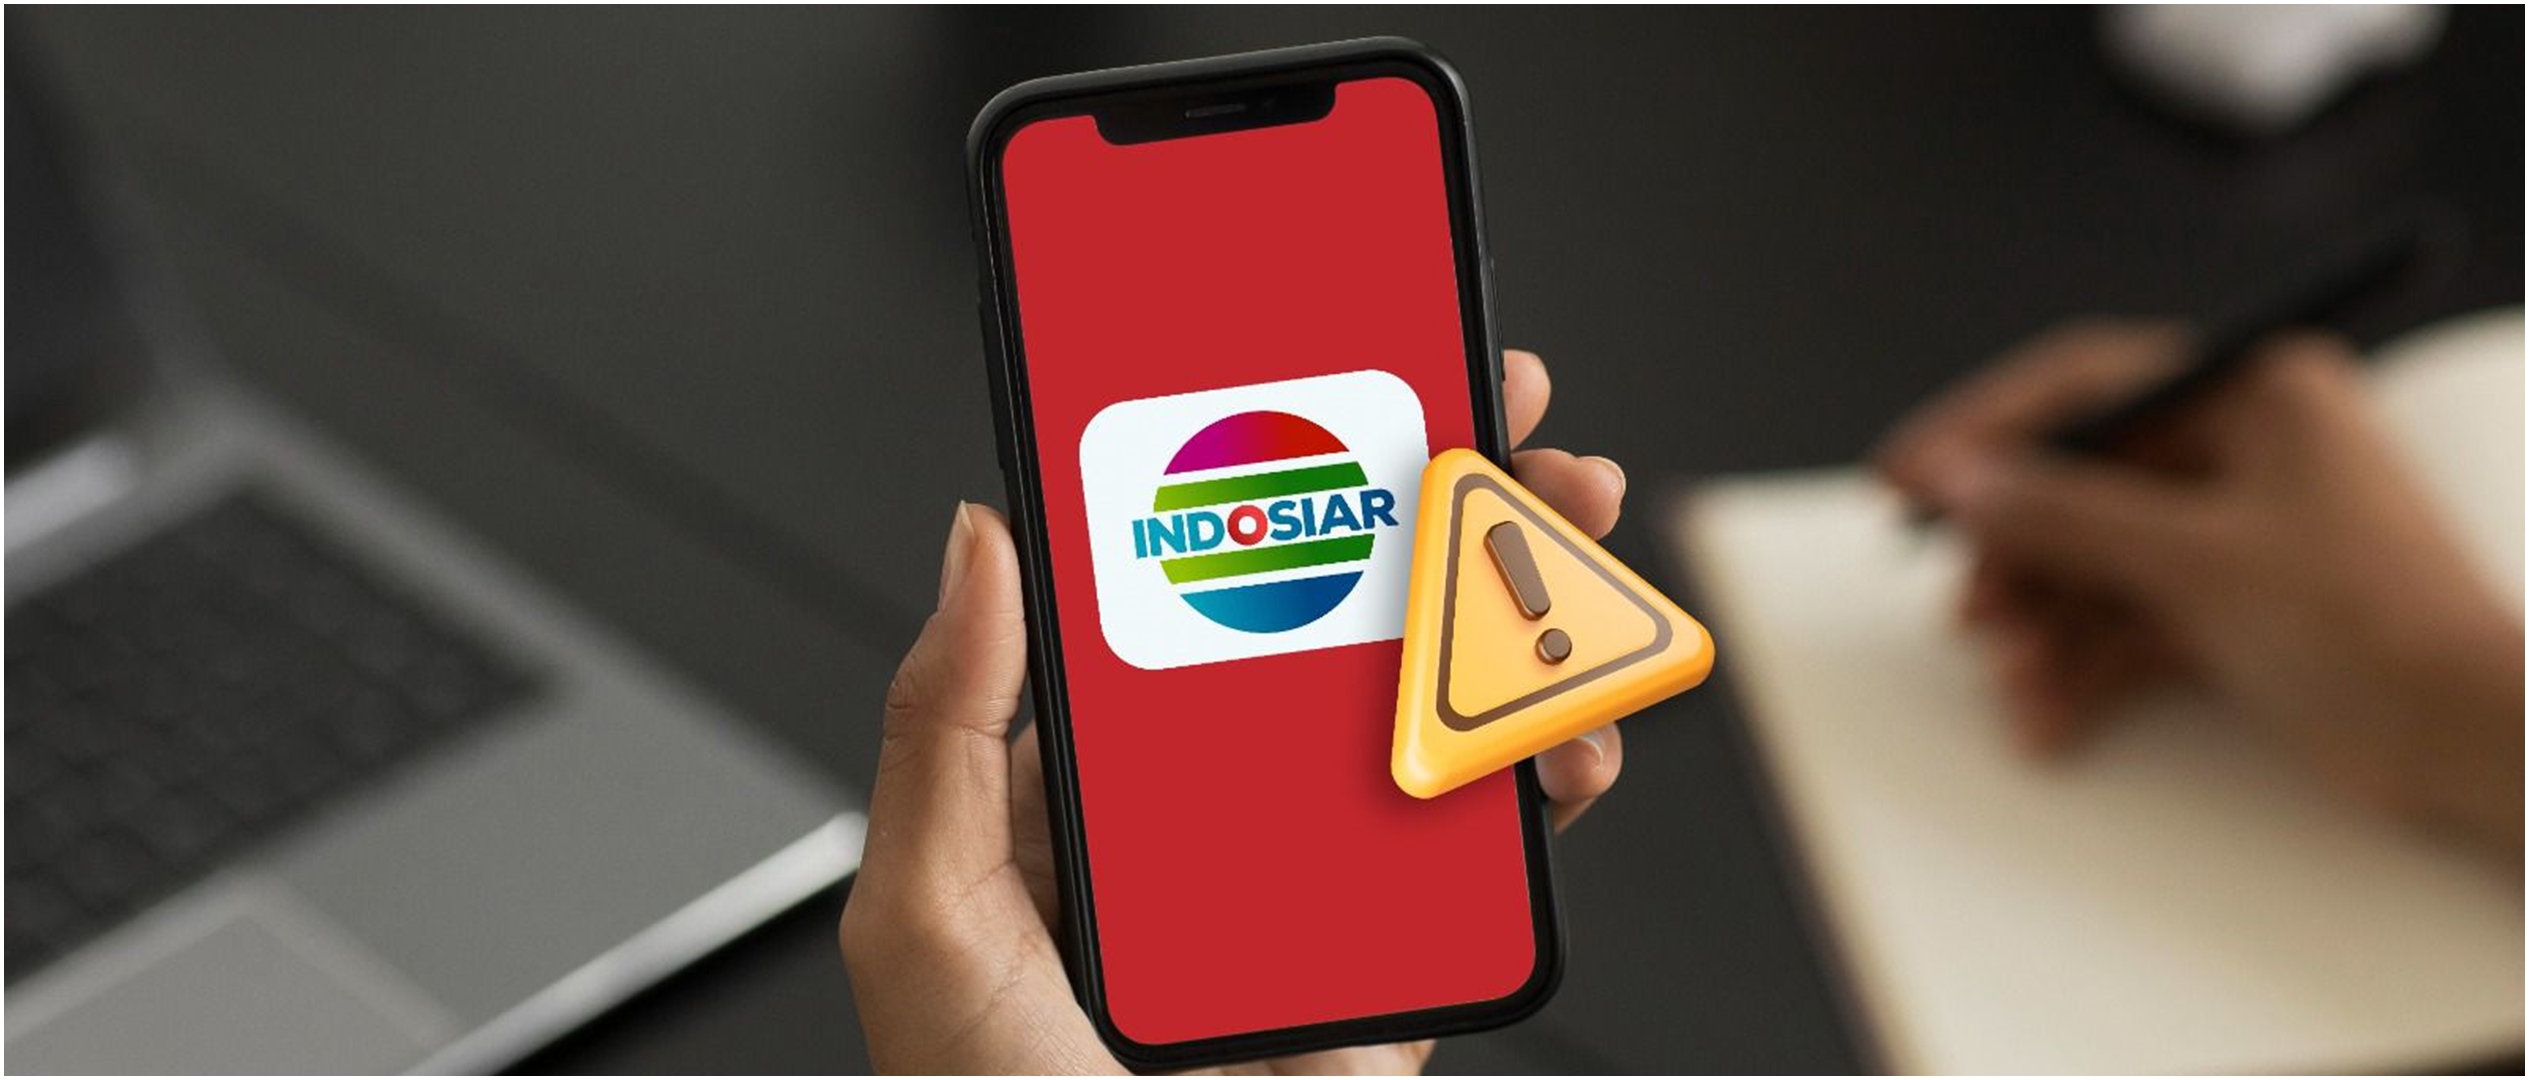 Kemenkumham tanggapi viralnya program dan logo Indosiar jadi parodi di media sosial